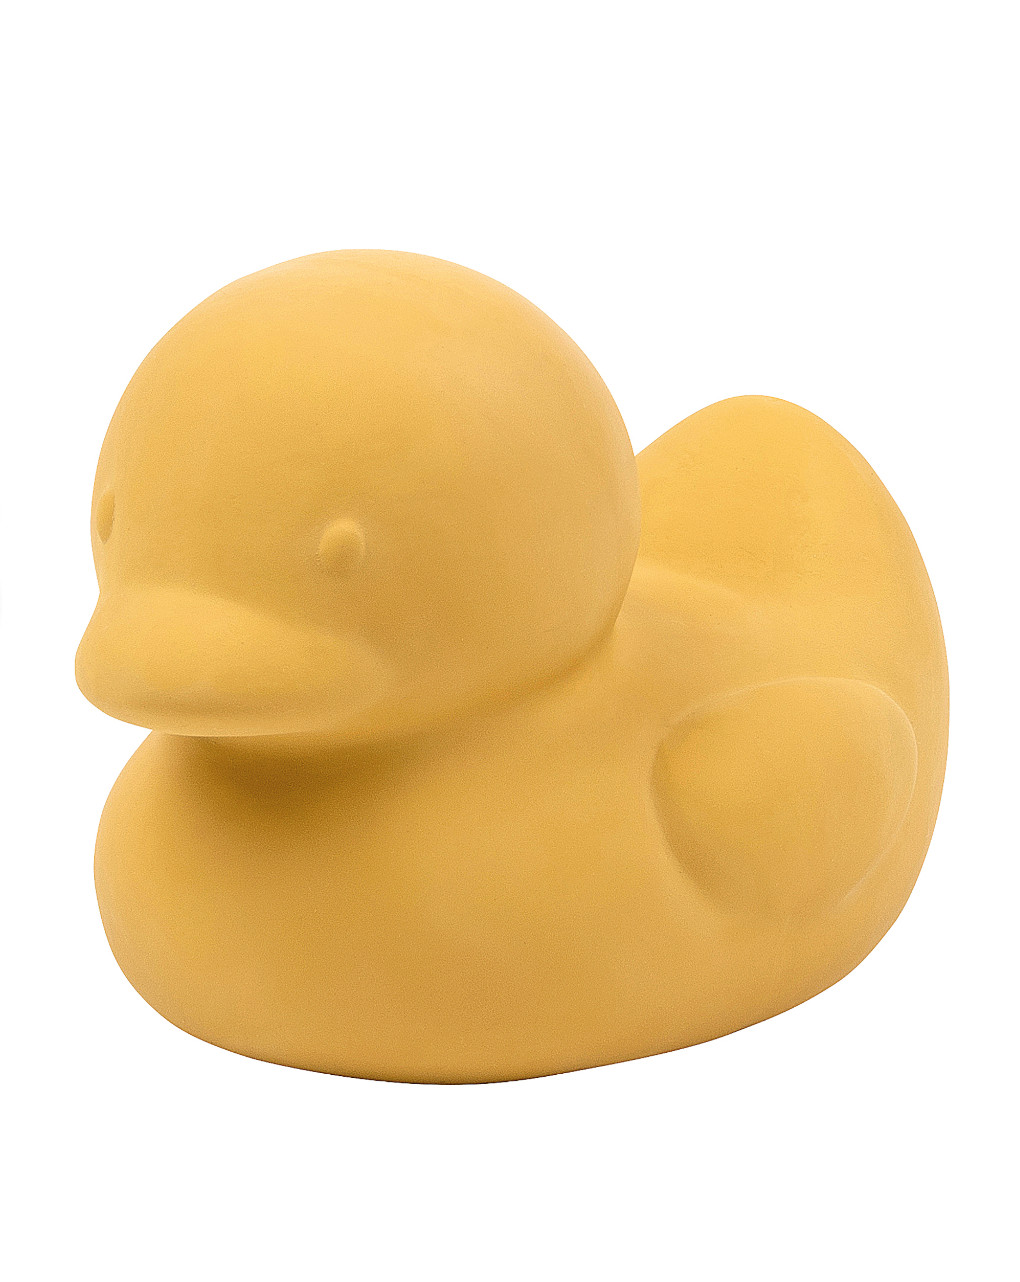 Pato amarillo (goma) - nattou - Nattou